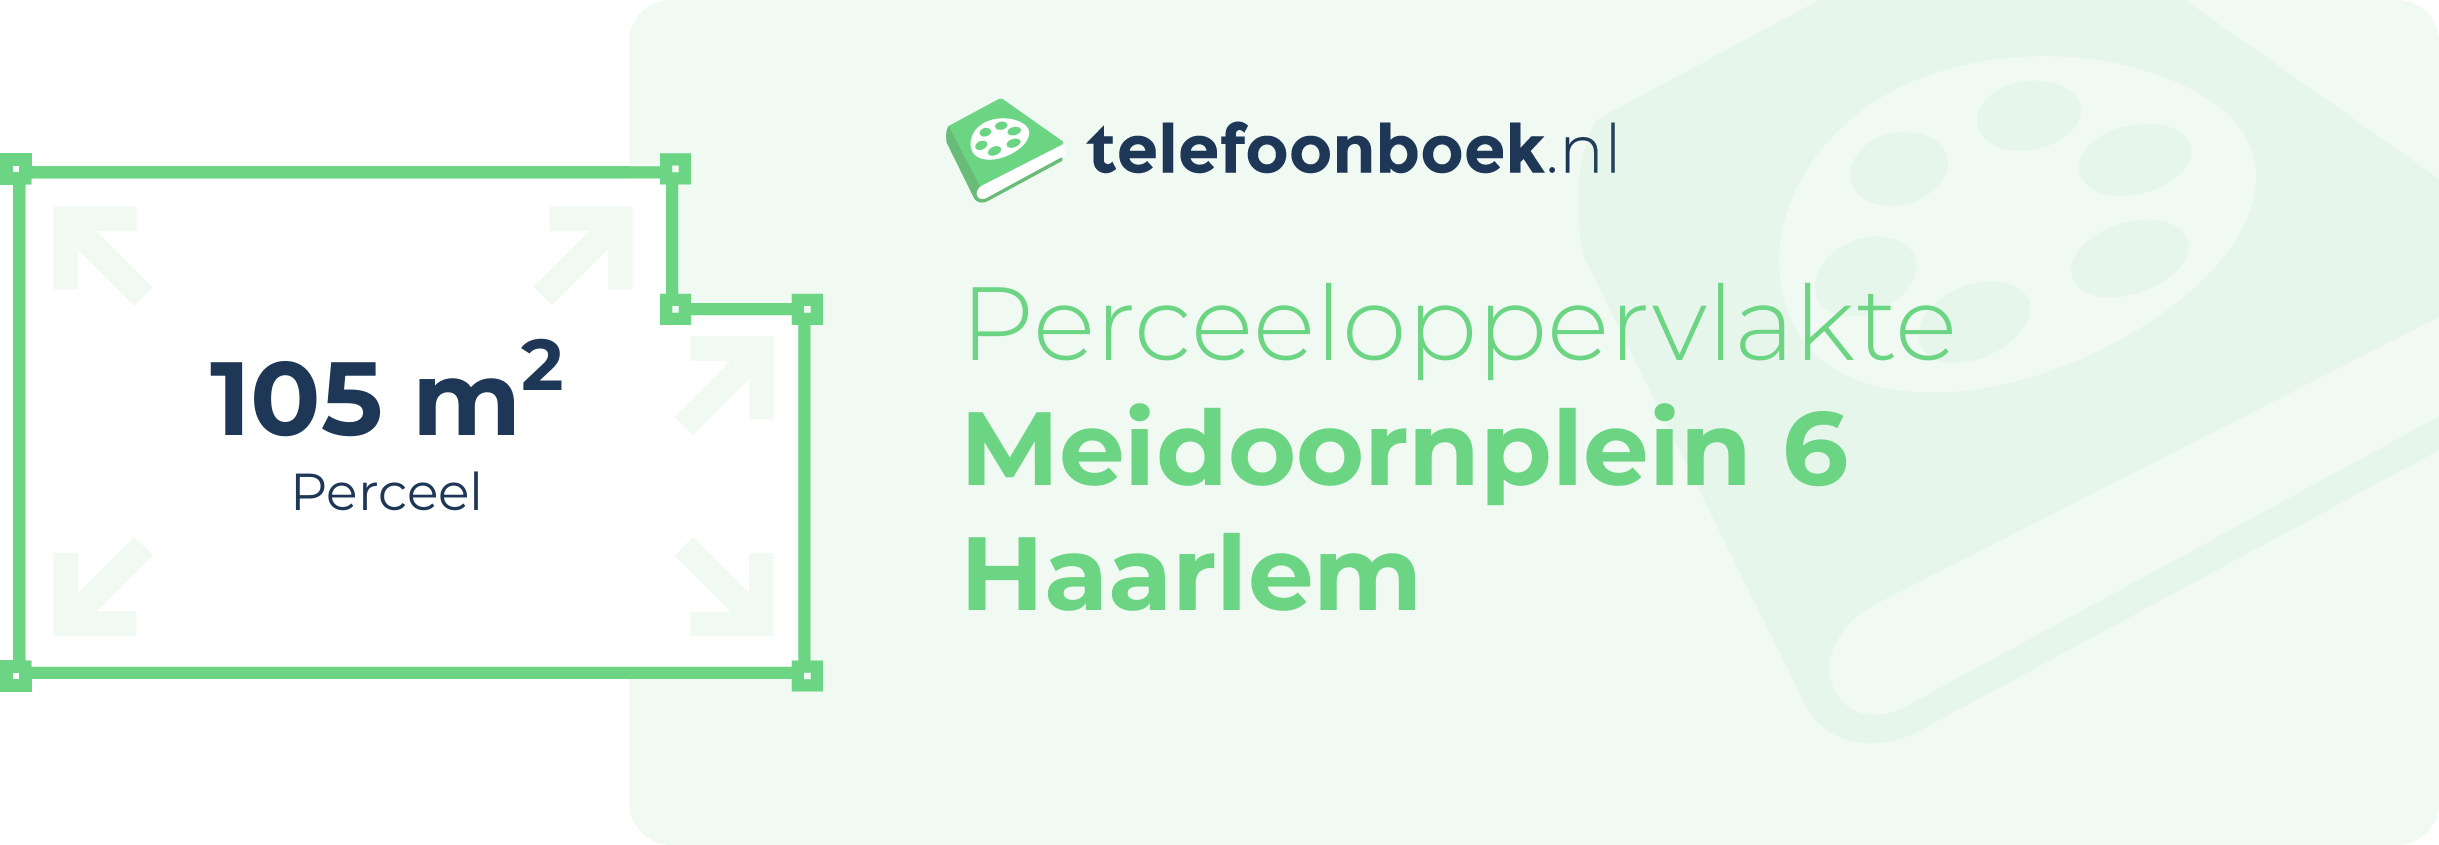 Perceeloppervlakte Meidoornplein 6 Haarlem